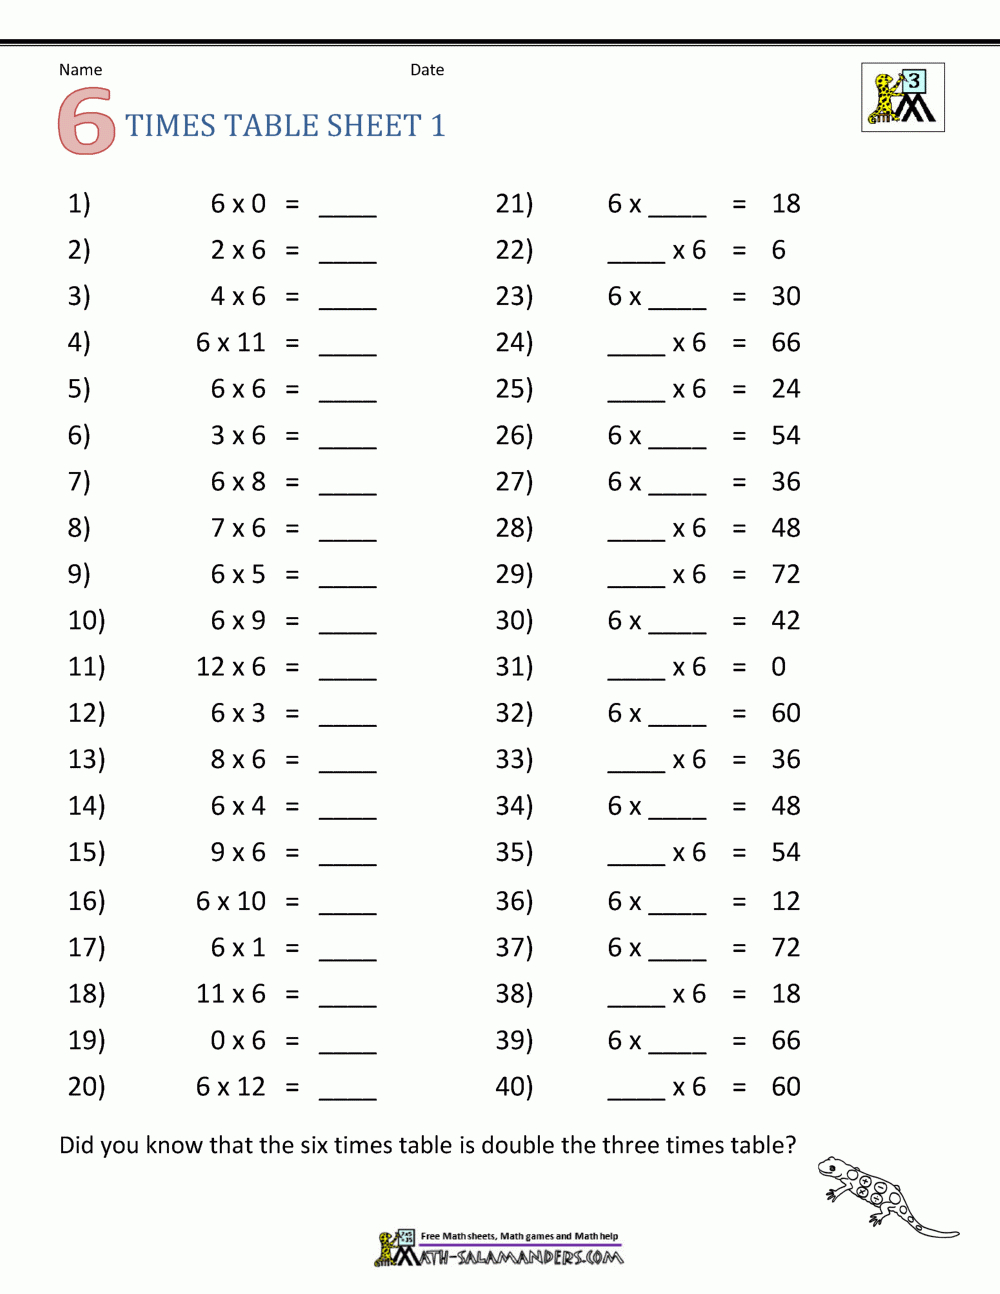 Multiplication Drill Sheets 3Rd Grade in Free Printable Multiplication Drill Sheets